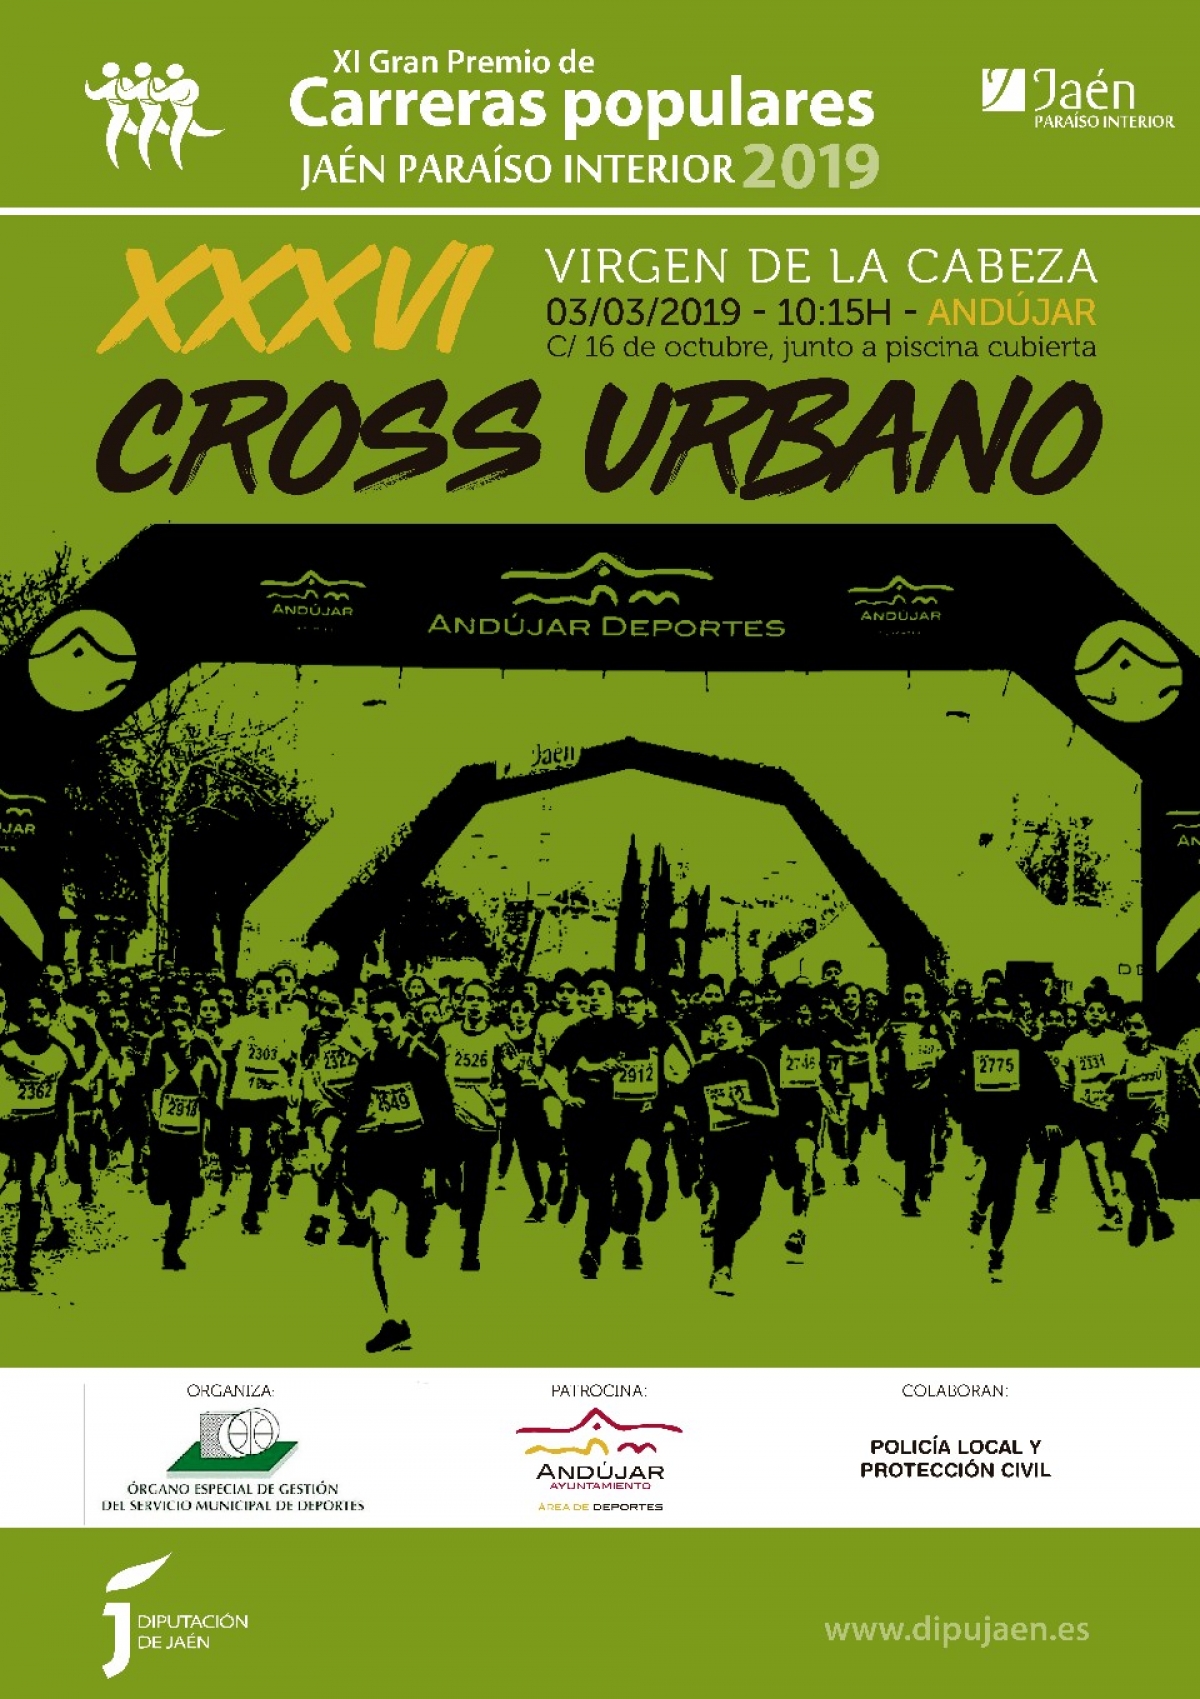 Abiertas inscripciones XXXVI Cross Urbano "Virgen de la Cabeza" Andújar 2019